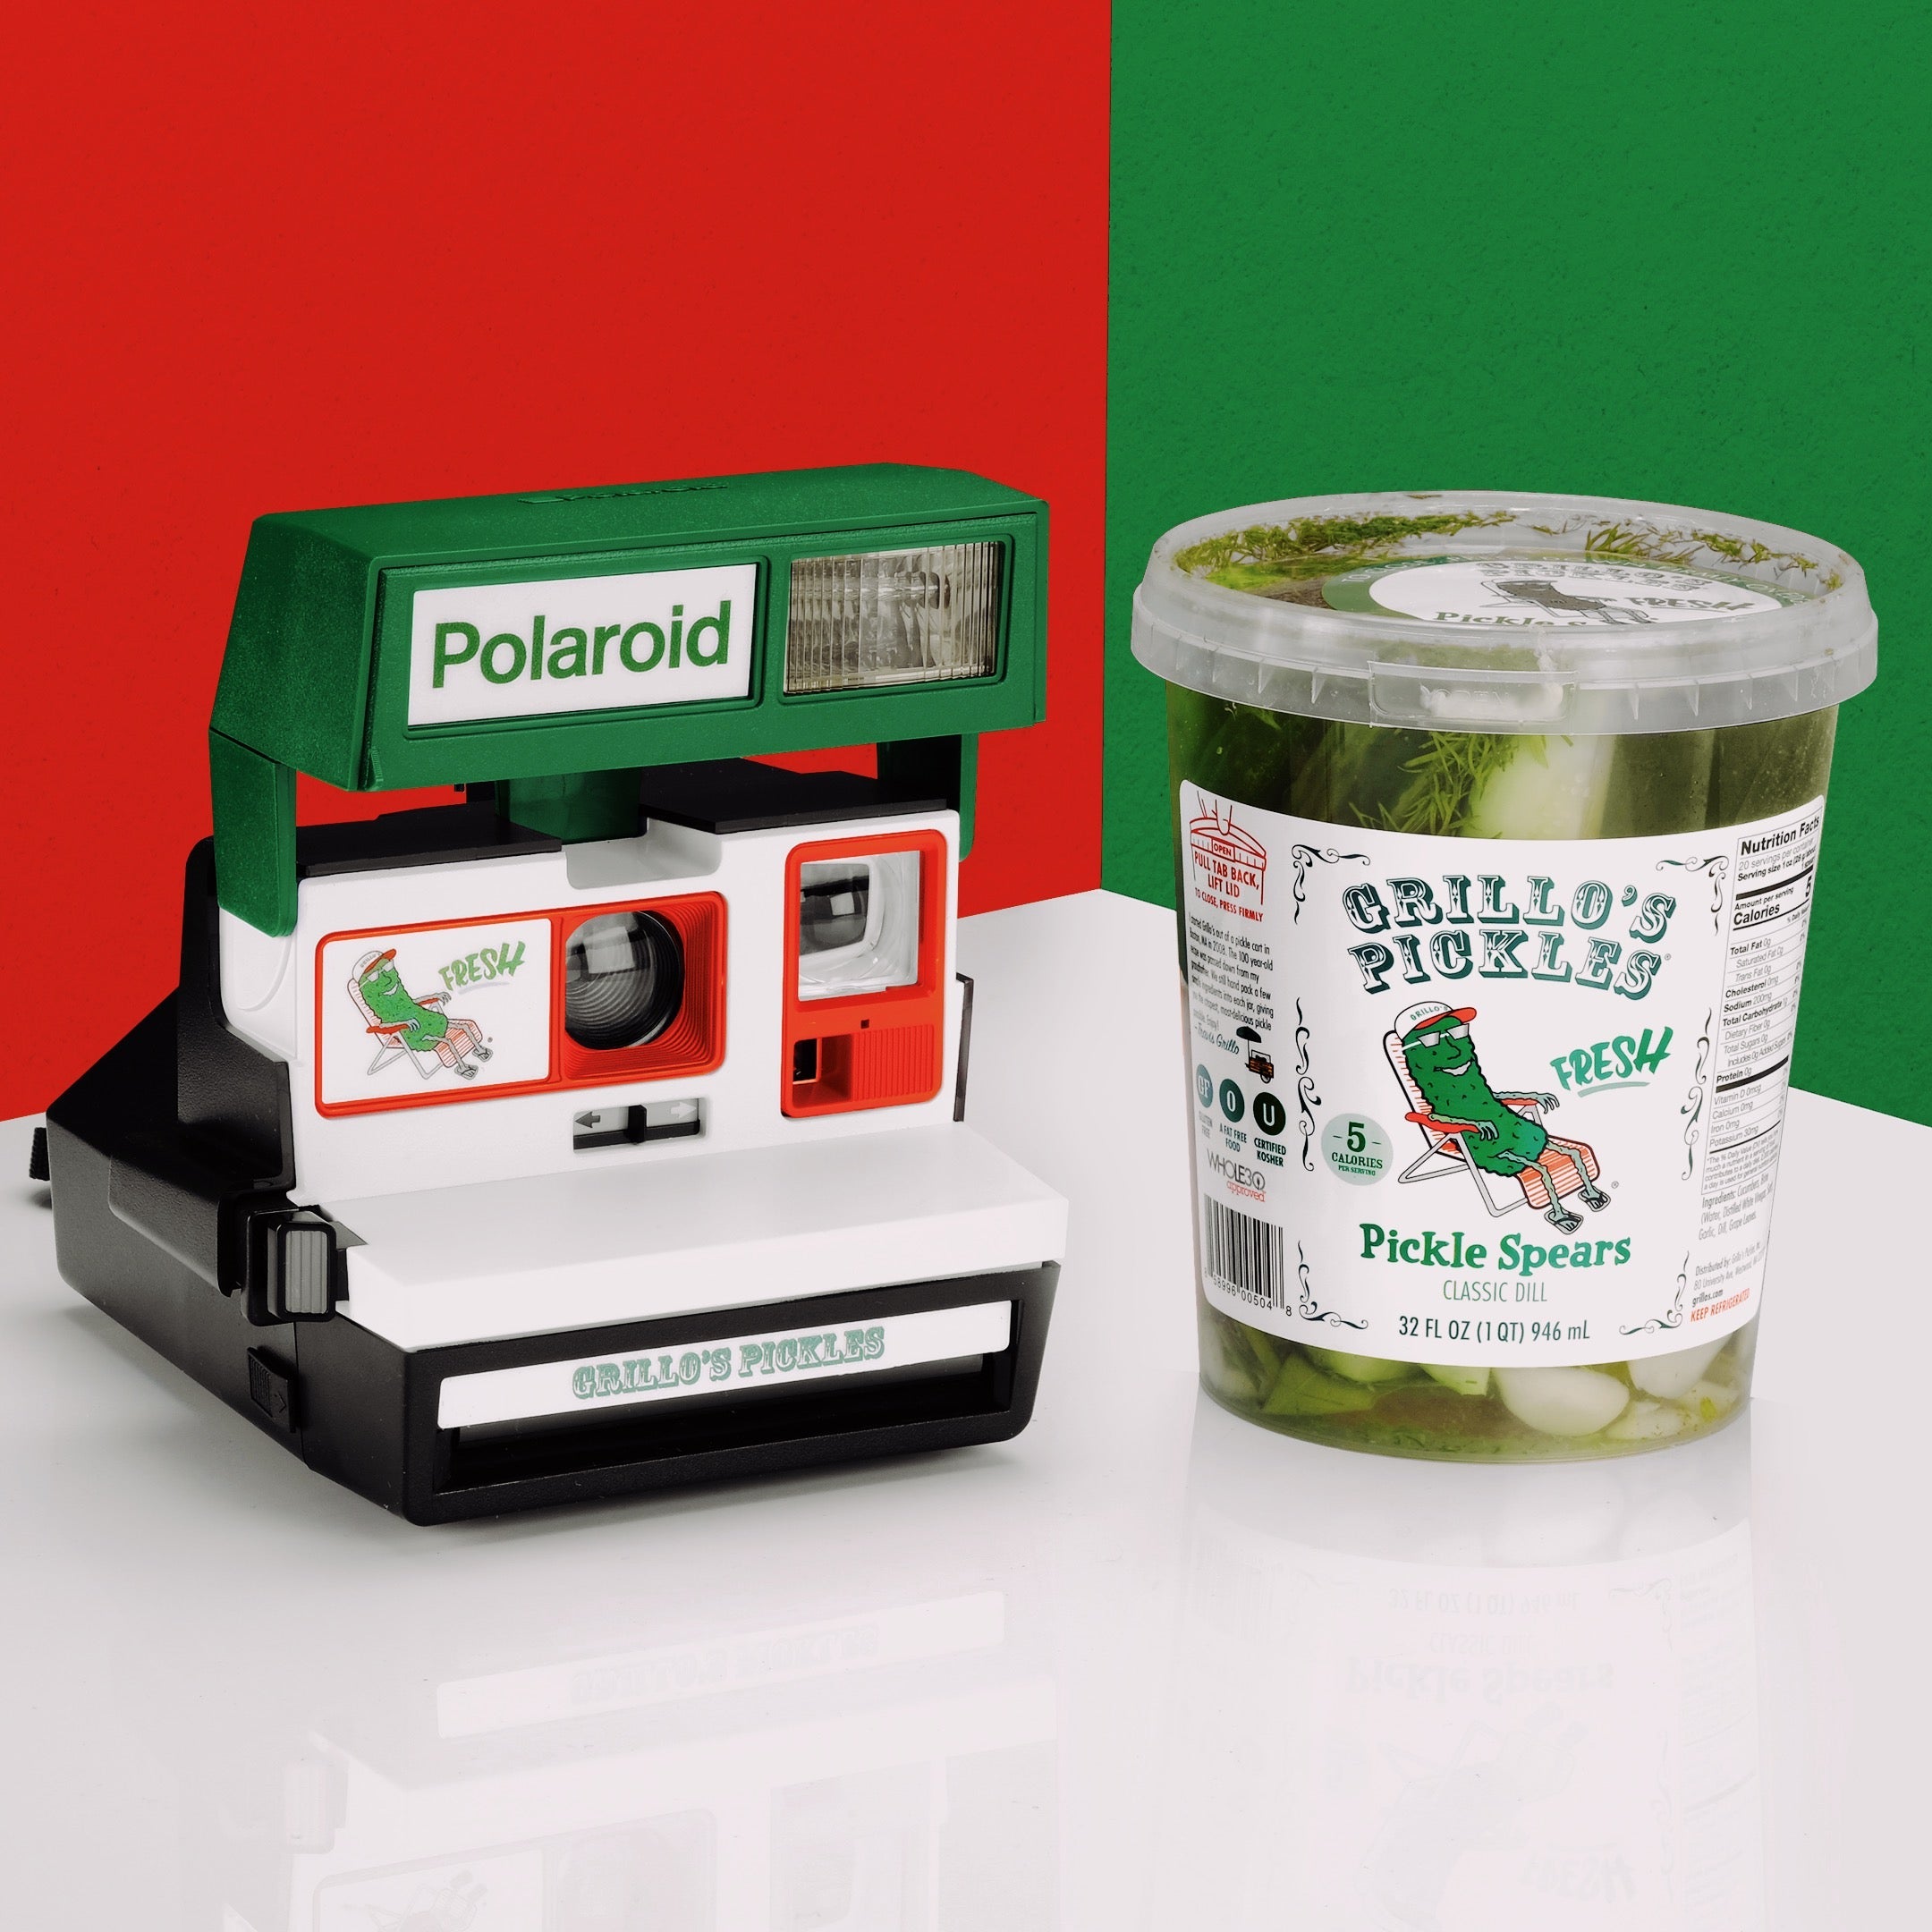 A Grillo's Pickles Polaroid Camera